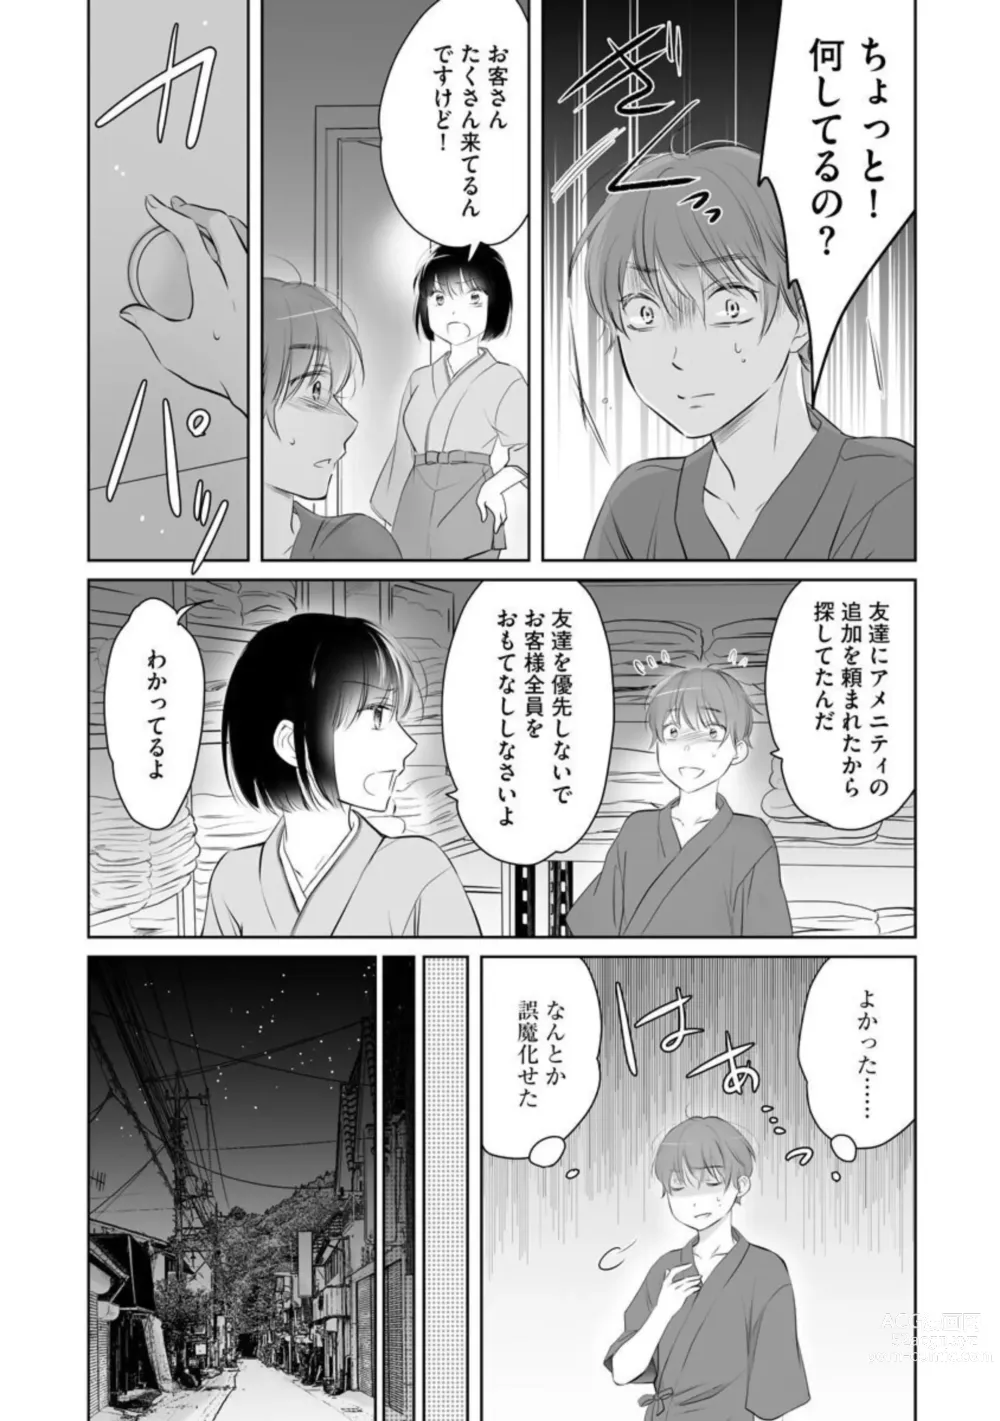 Page 39 of manga Nozoki ana oba to Boku no Himitsu no Natsuyasumi 1-2